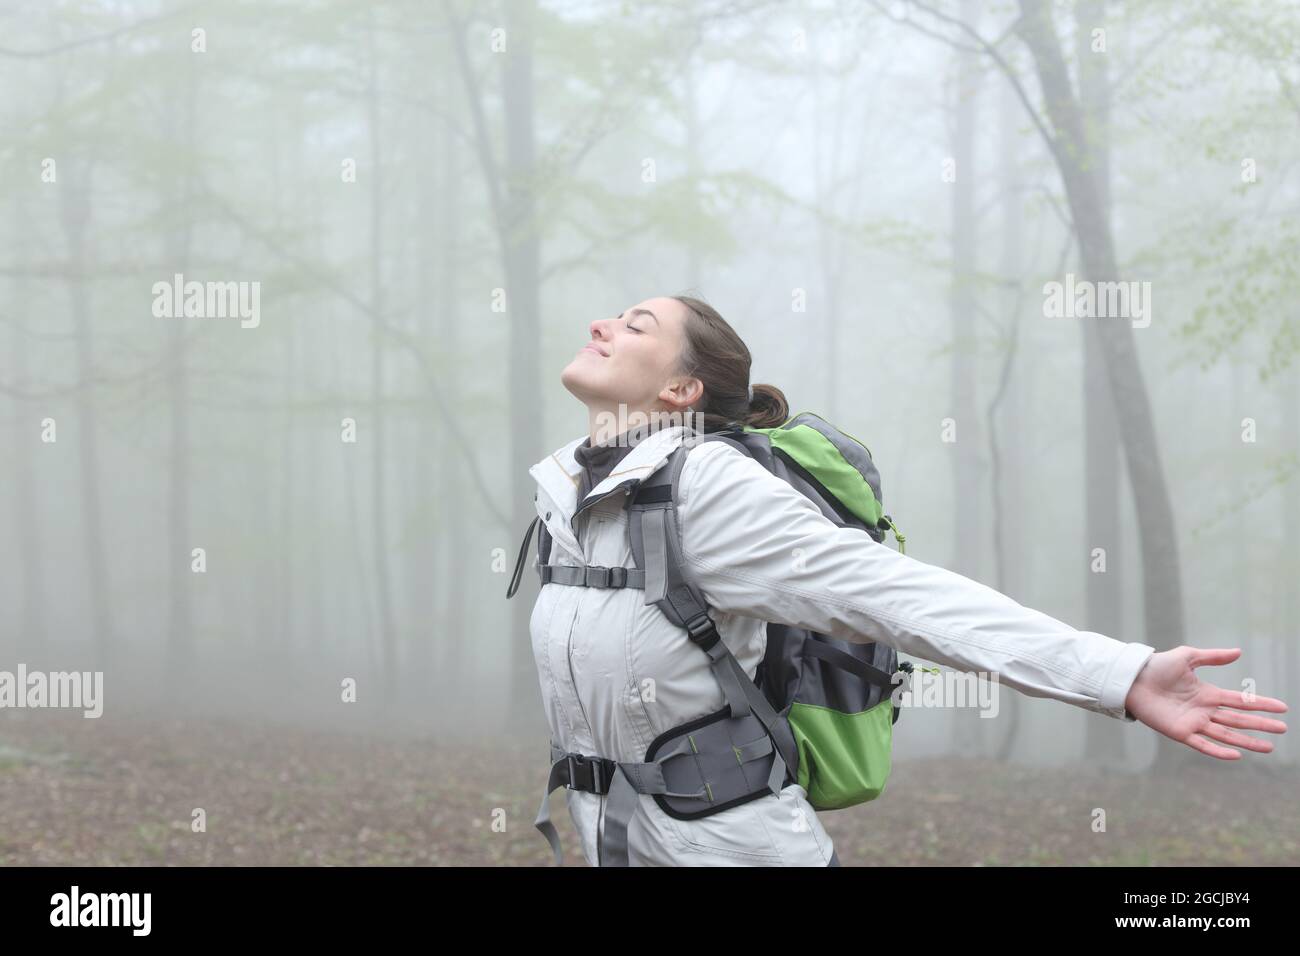 Fröhlicher Wanderer, der frische Luft atmet und die Arme an einem nebligen Tag im Wald streckt Stockfoto